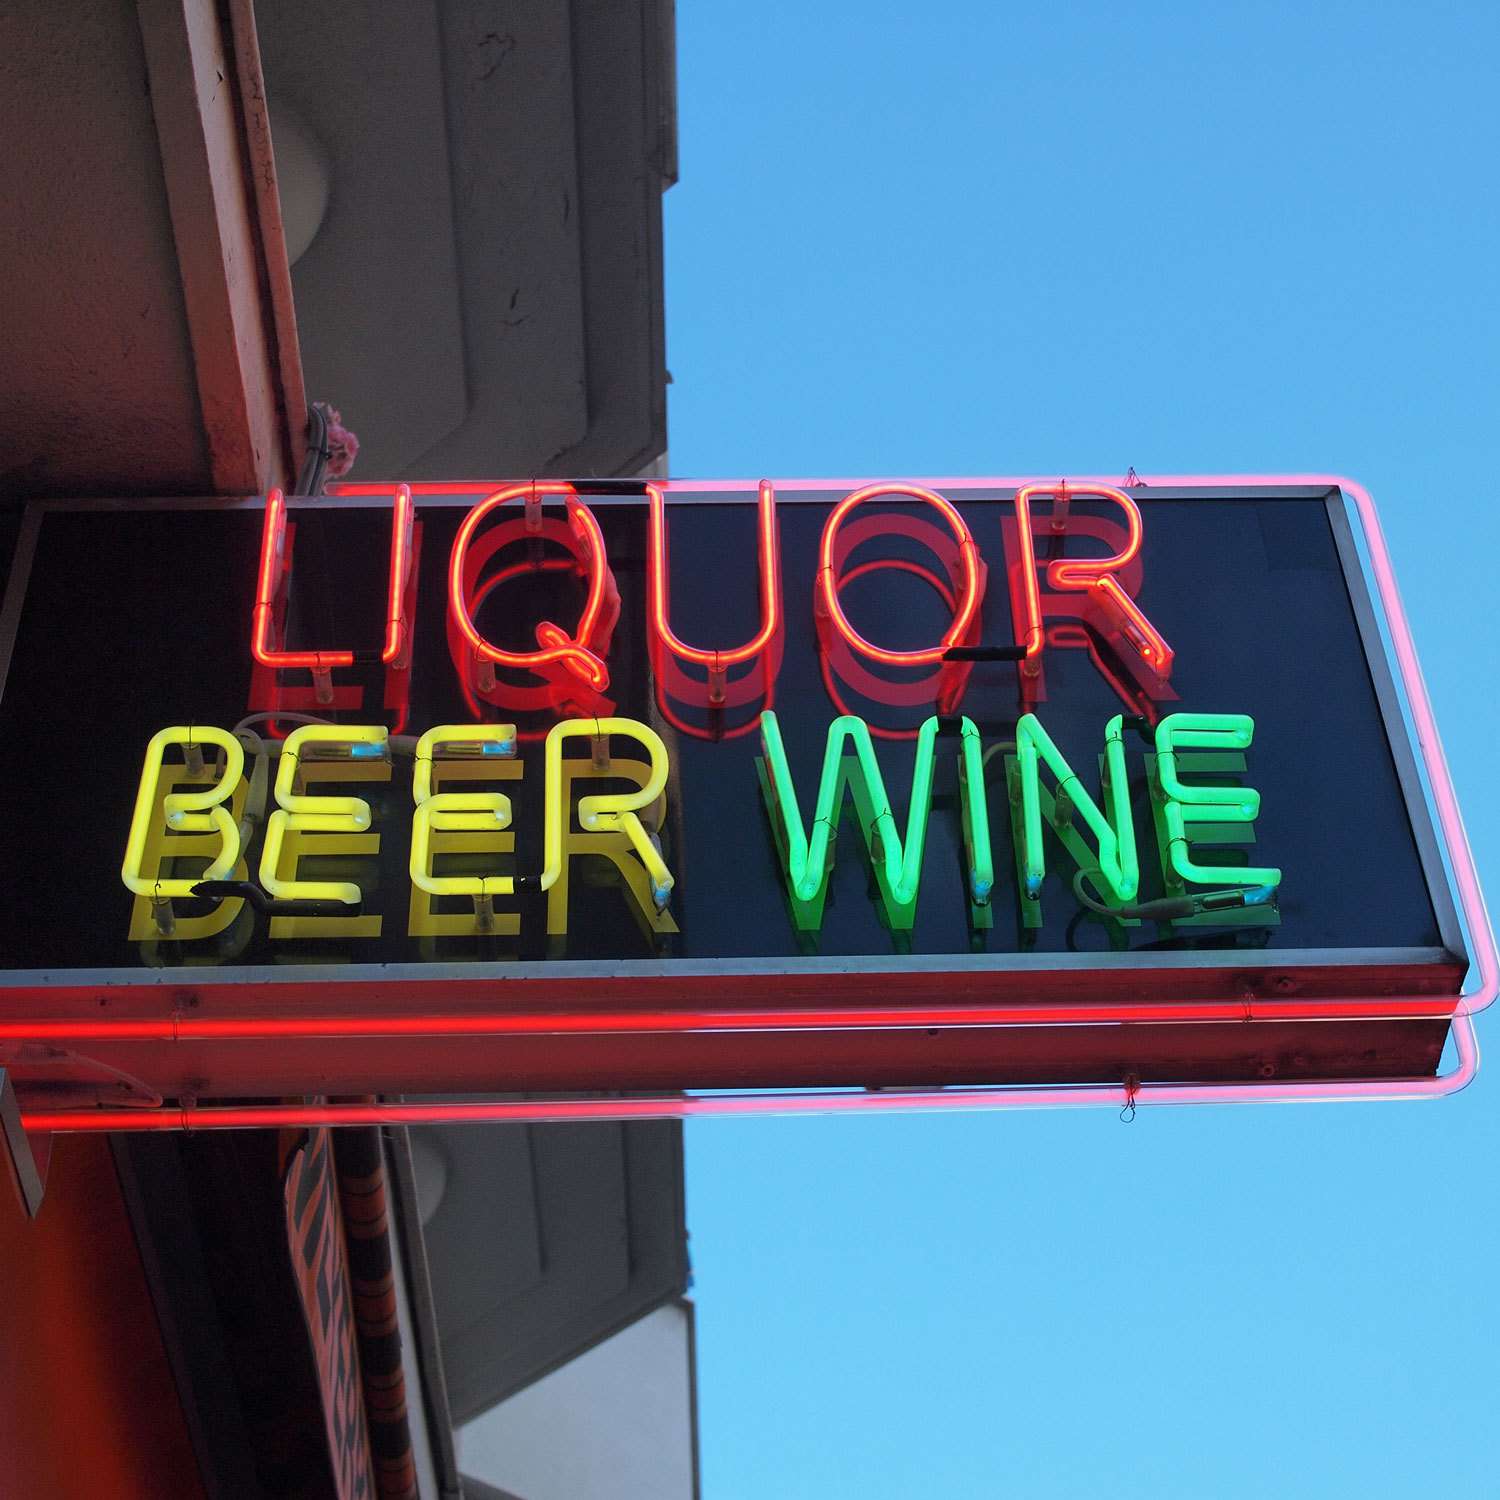 neon sign that reads "Liquor Beer Wine"